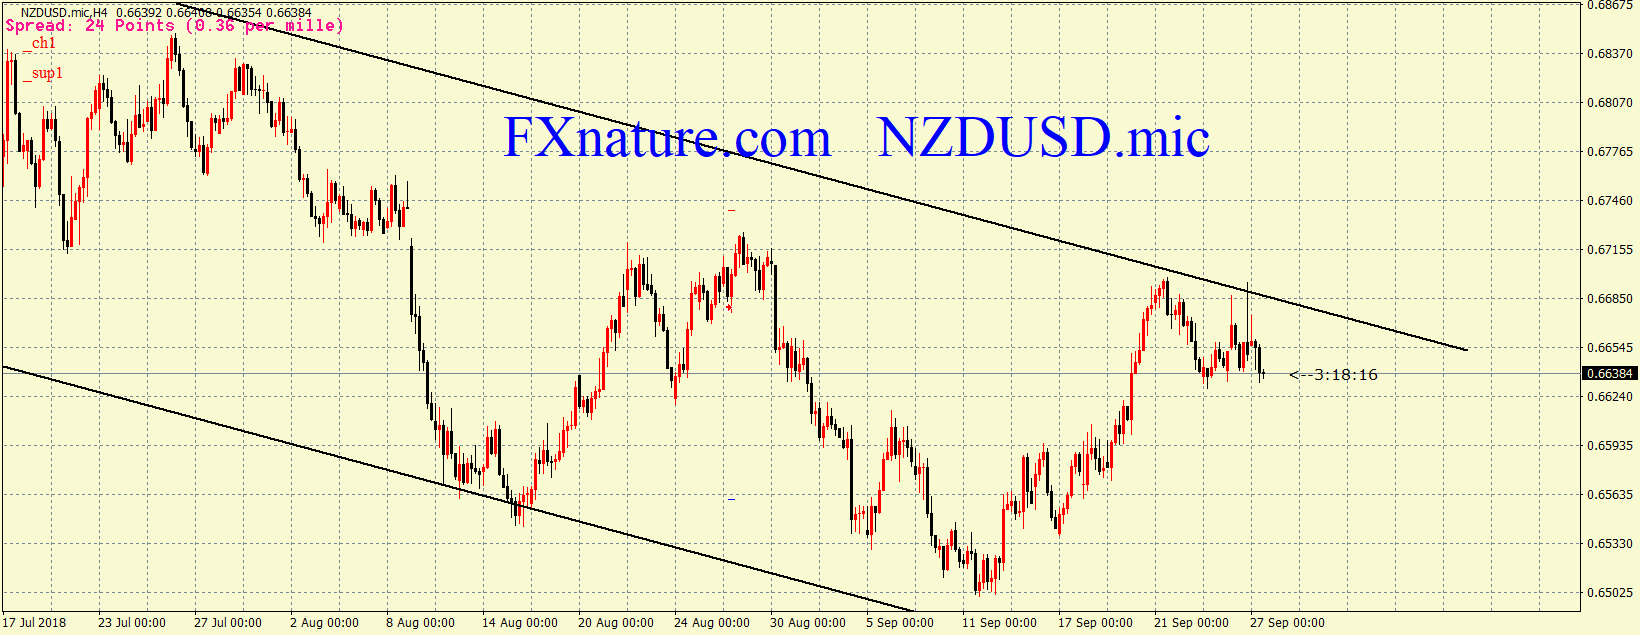  دلار نیوزلند دلار 